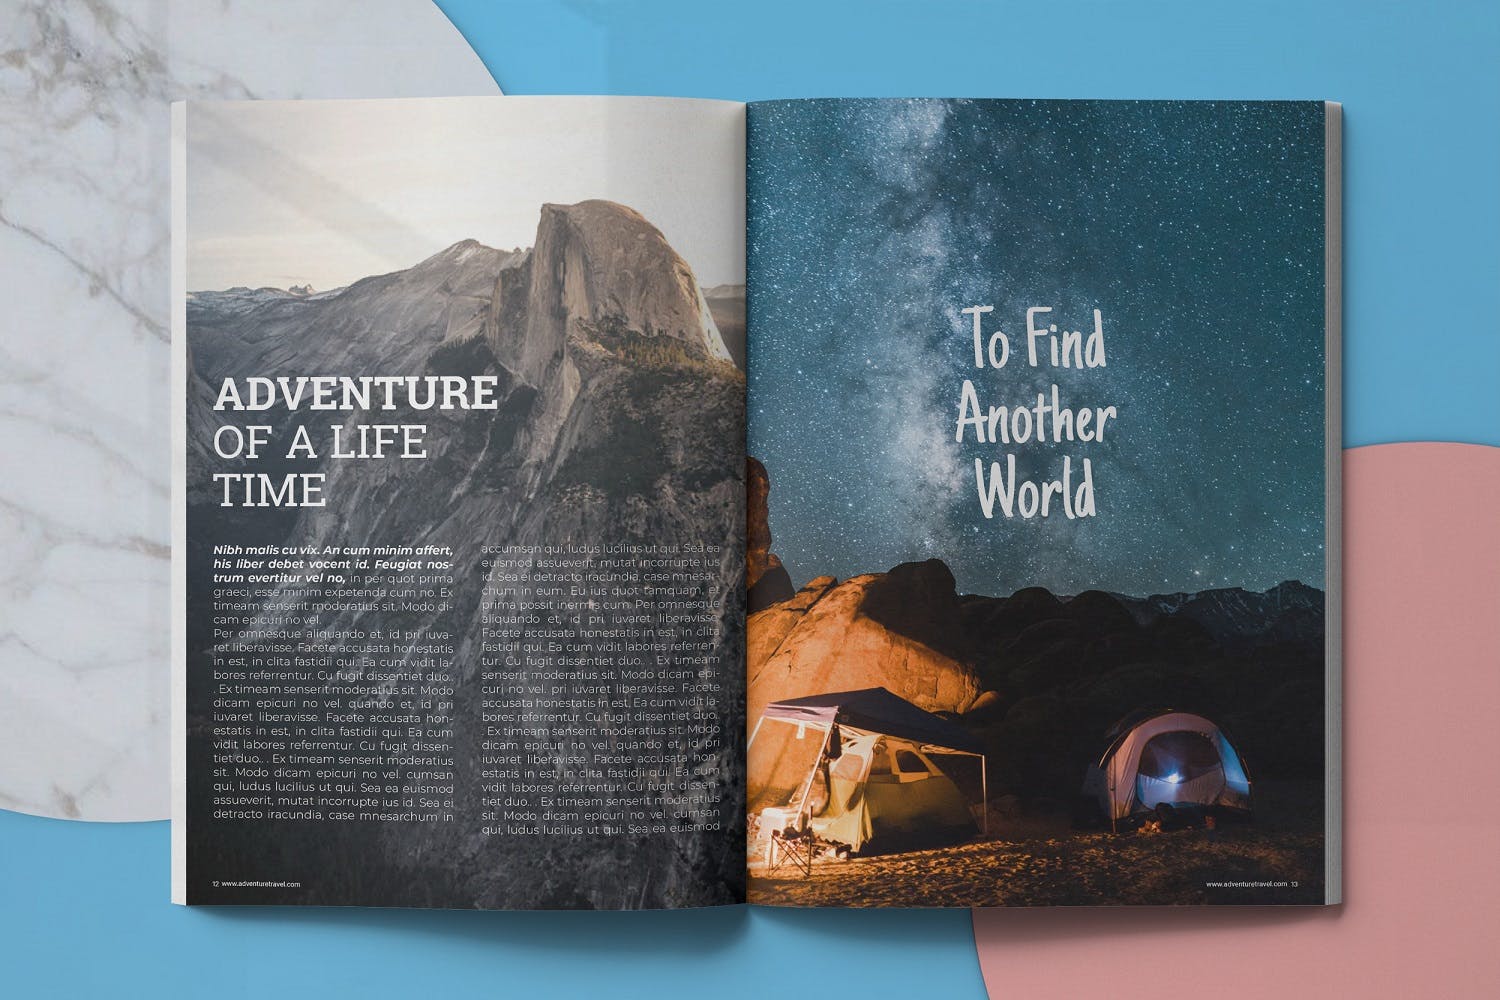 冒险旅行主题蚂蚁素材精选杂志排版设计模板 Adventure Travel Magazine Template插图(6)